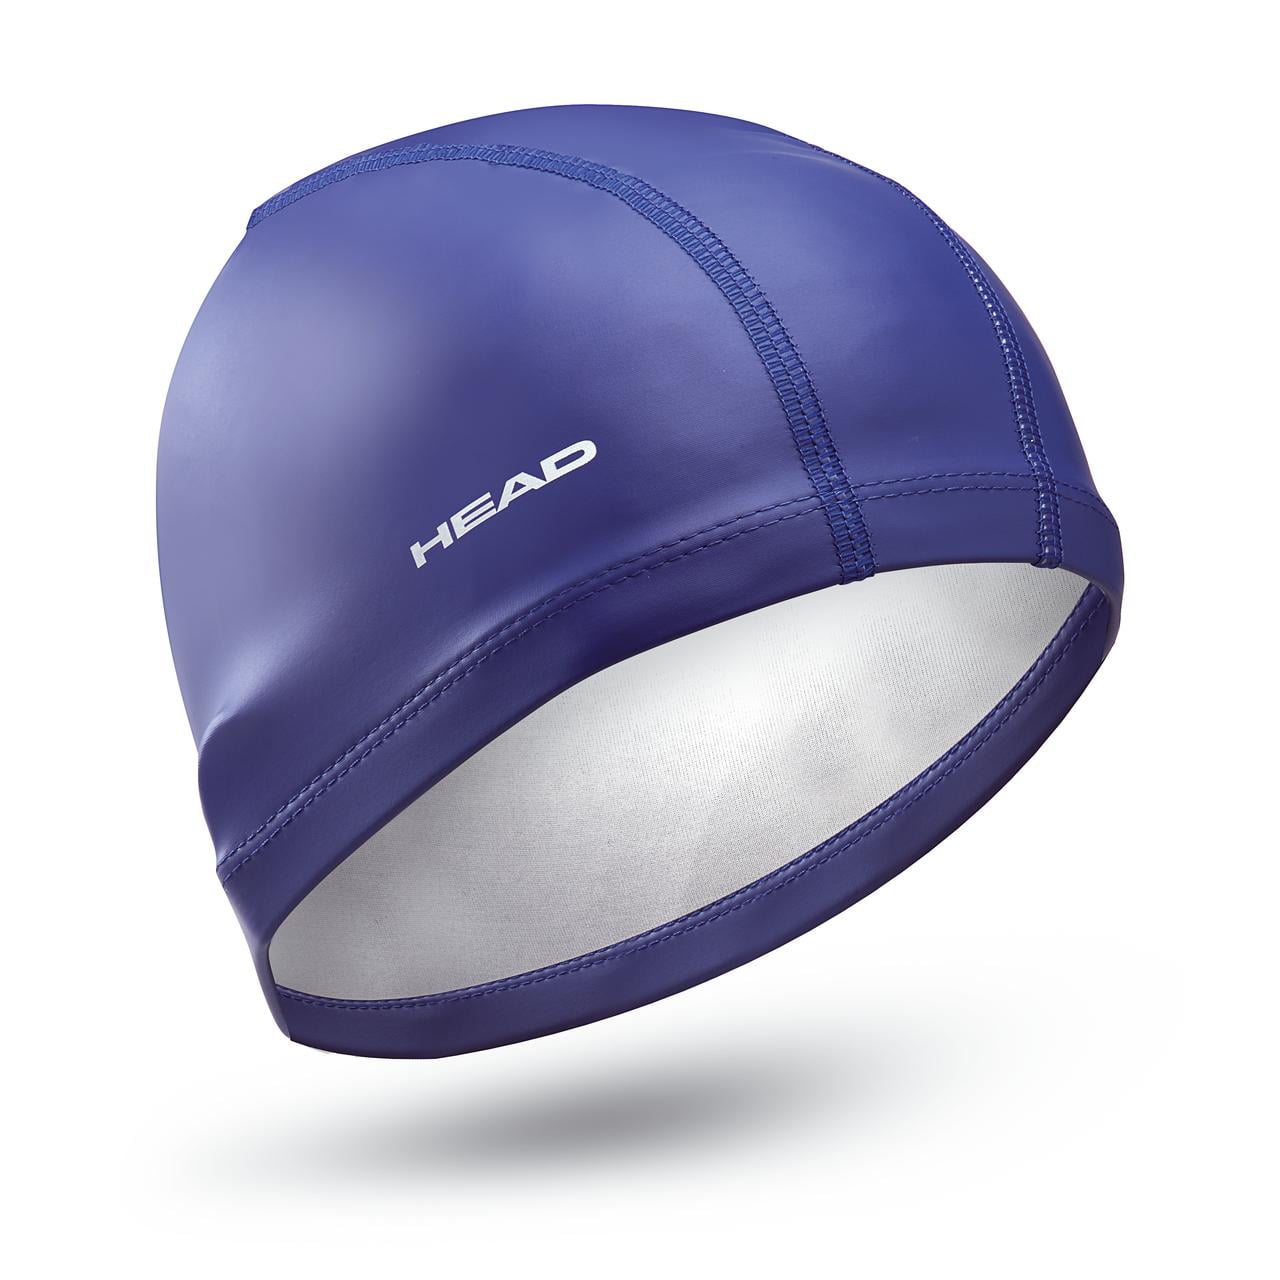 Black/Sliver PU Coated Swimming Cap 3D Ergonomic Design Comfortable & Durable 